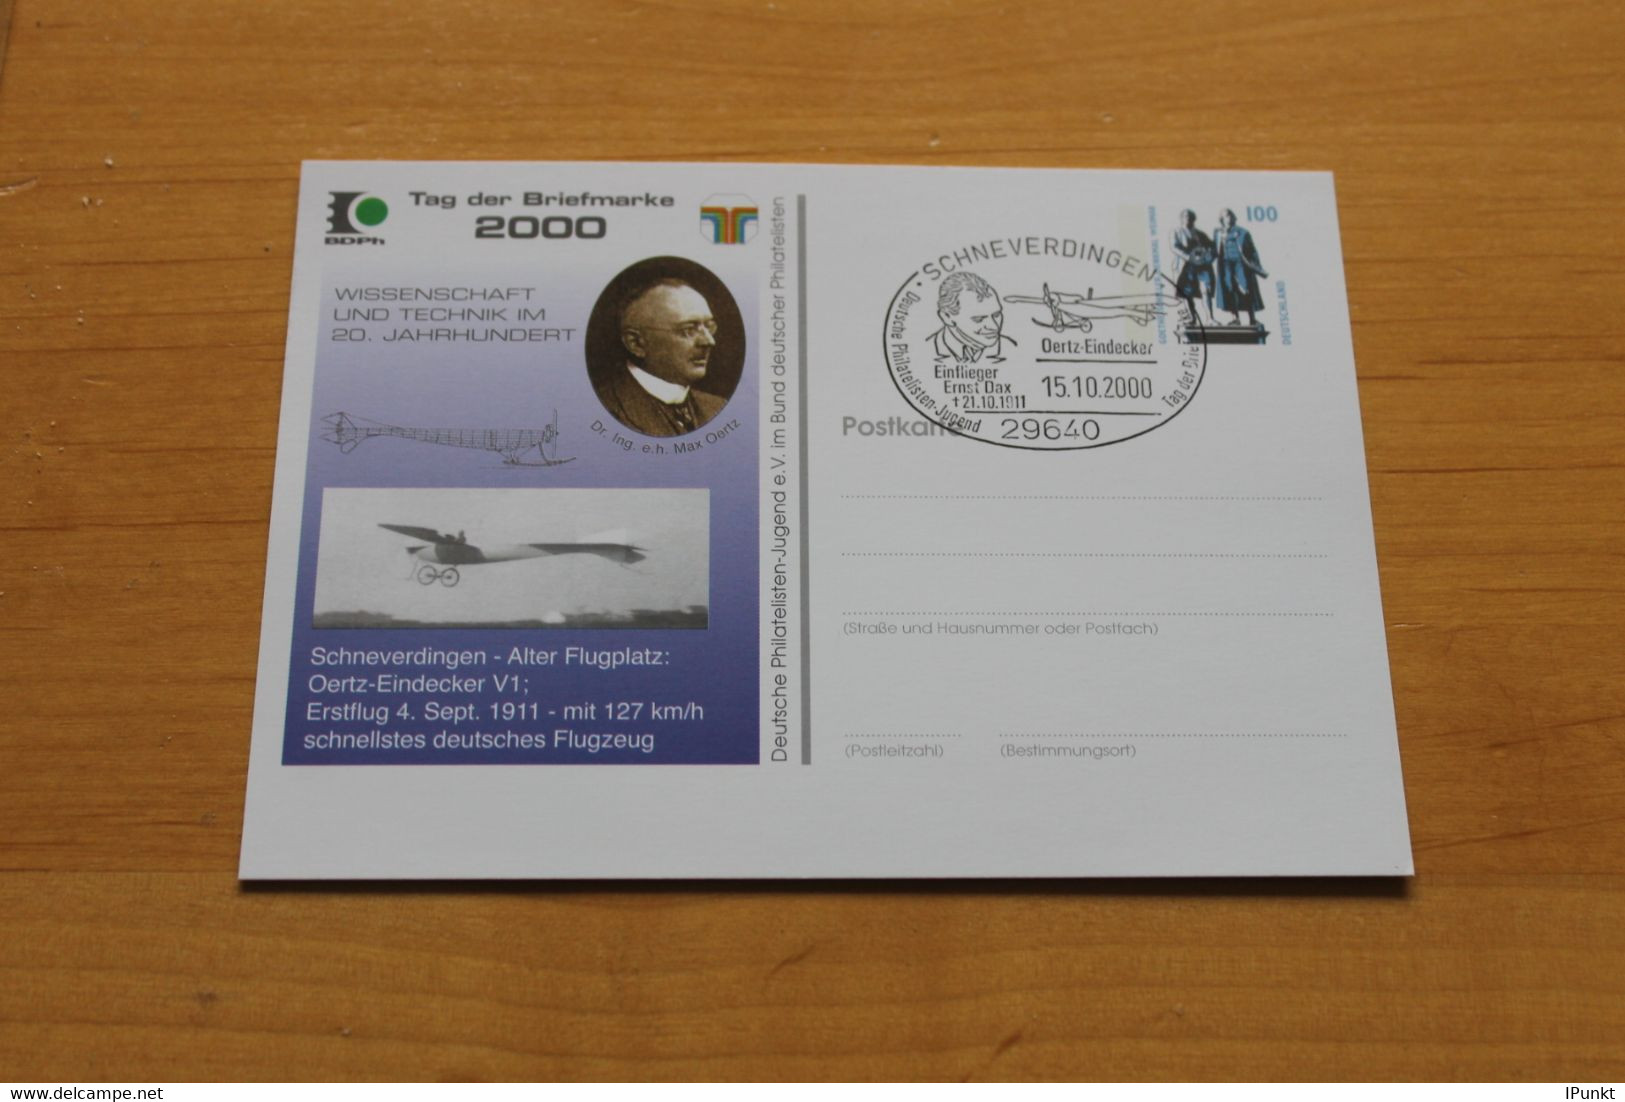 Deutschland; Flugzeug Oertz; Tag Der Briefmarke 2000 Schneverdingen - Privatpostkarten - Gebraucht